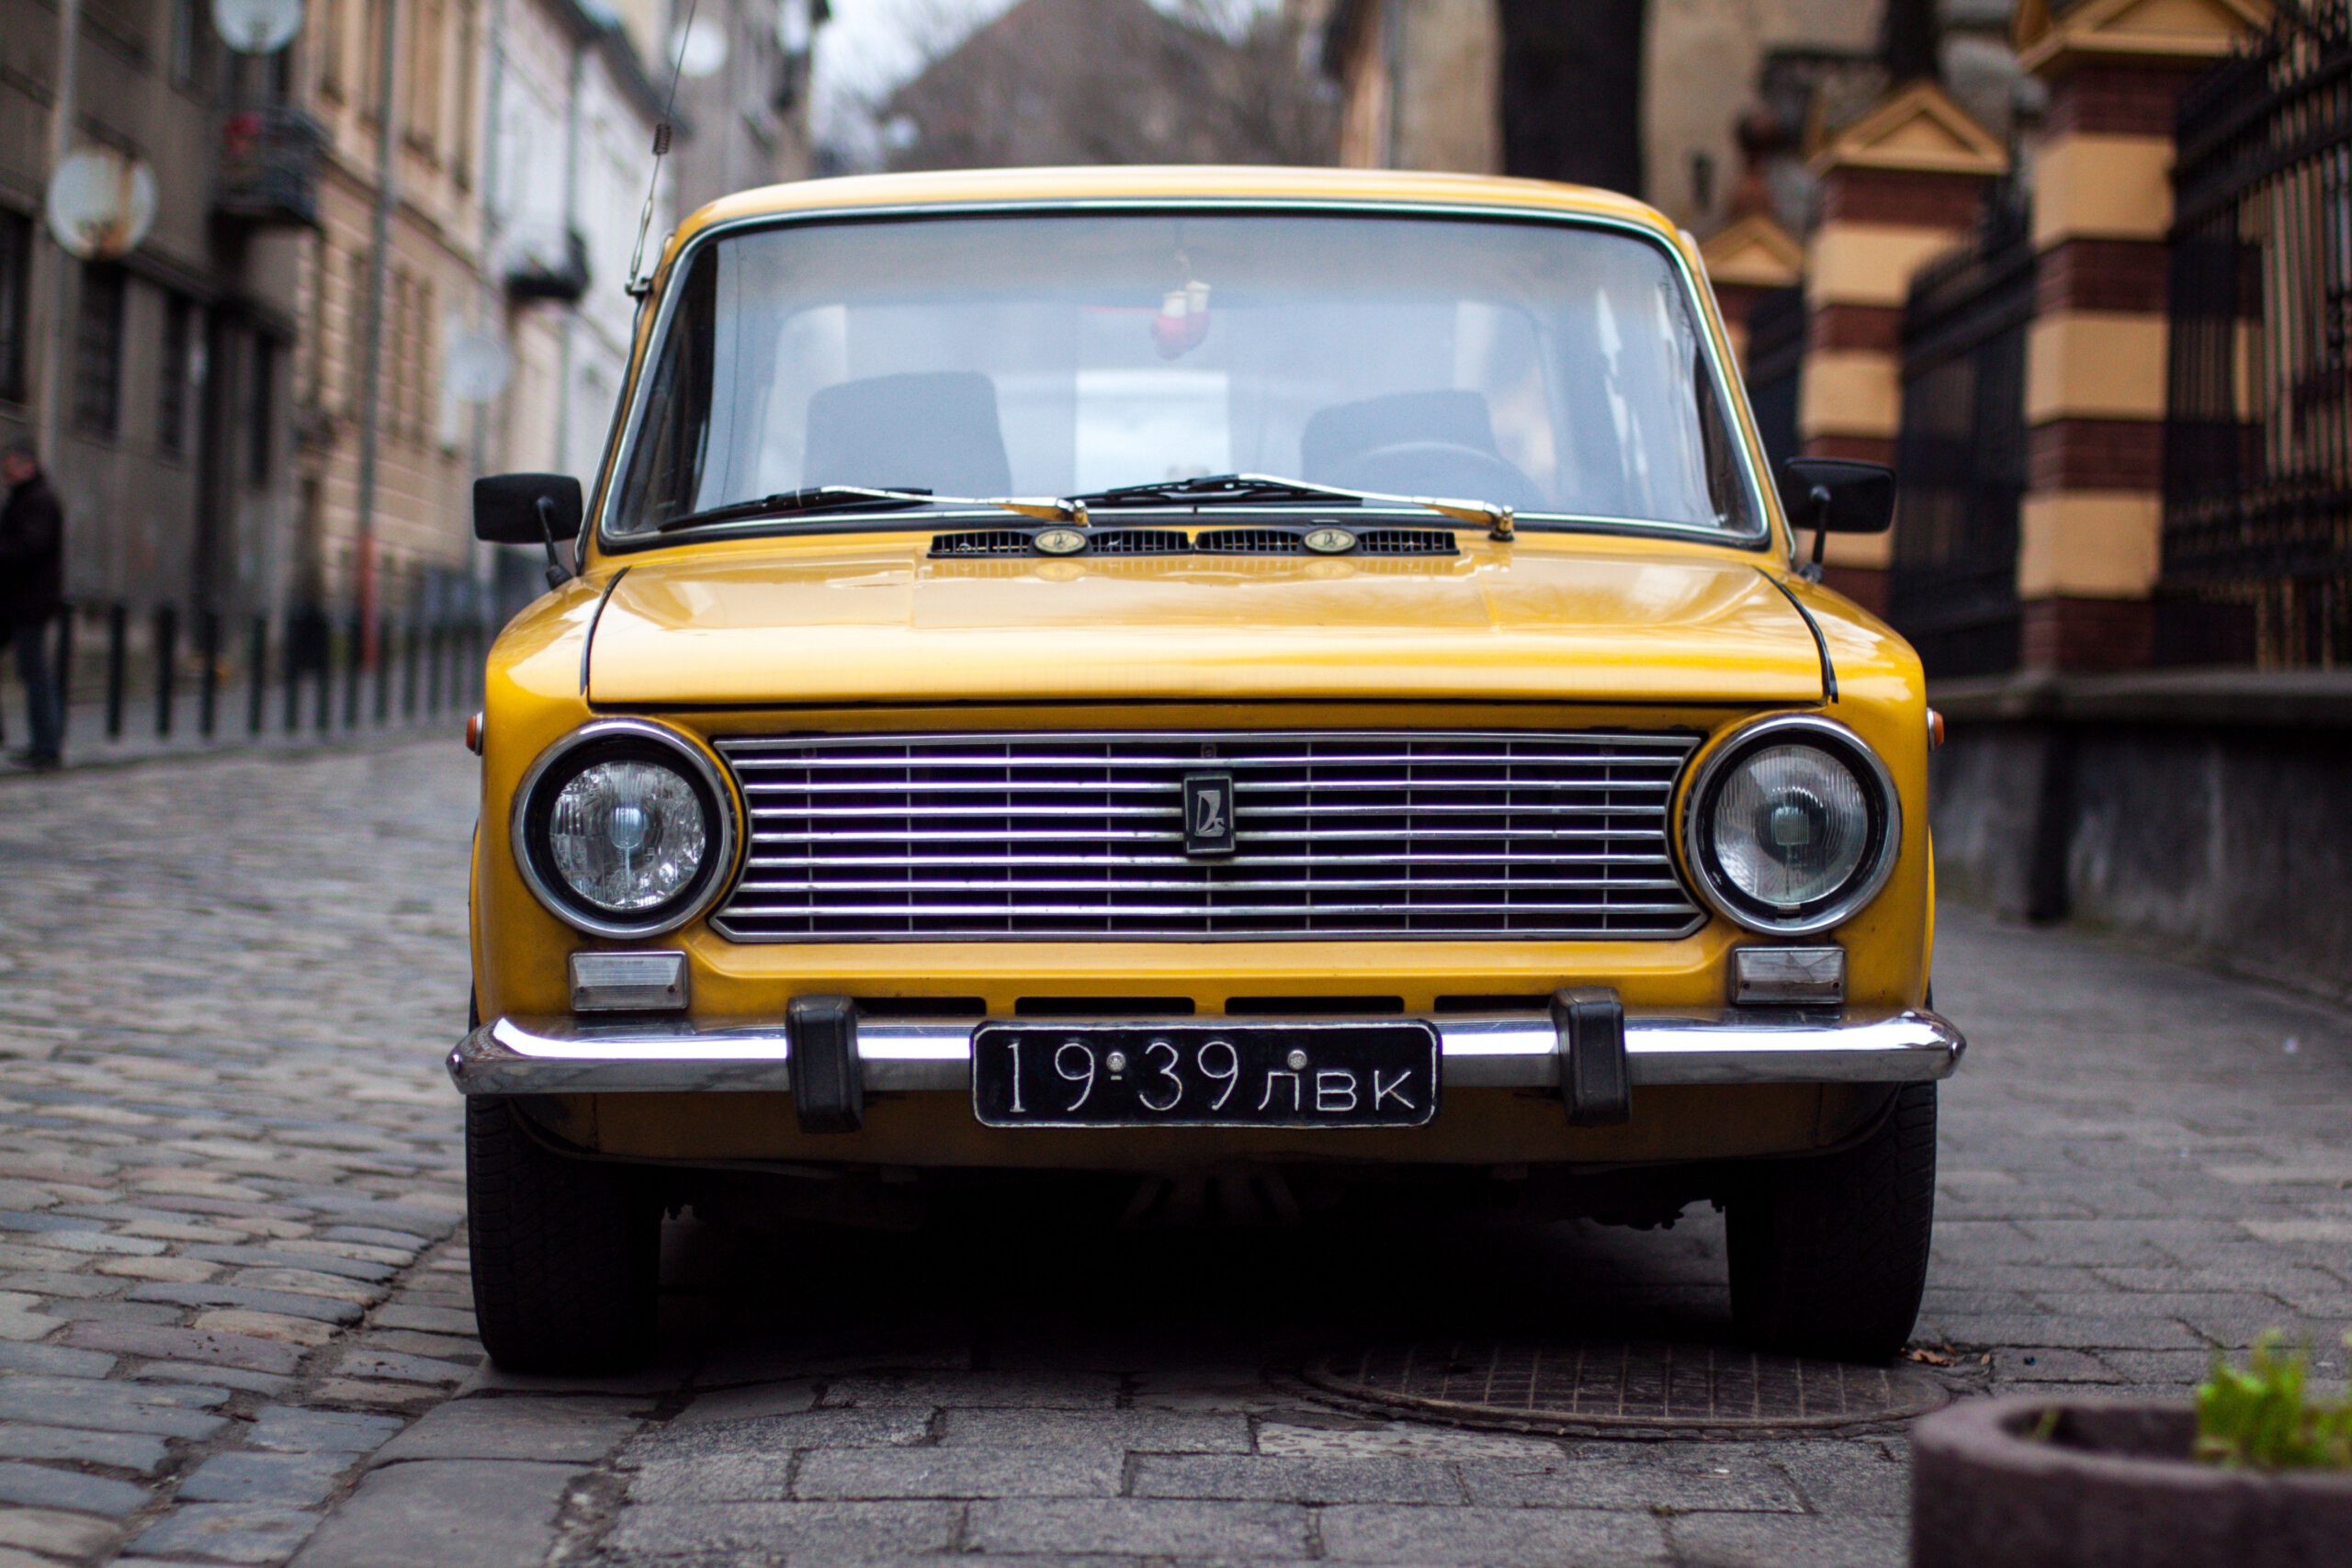 Stary żółty samochód stojący na wąskiej brukowanej uliczce